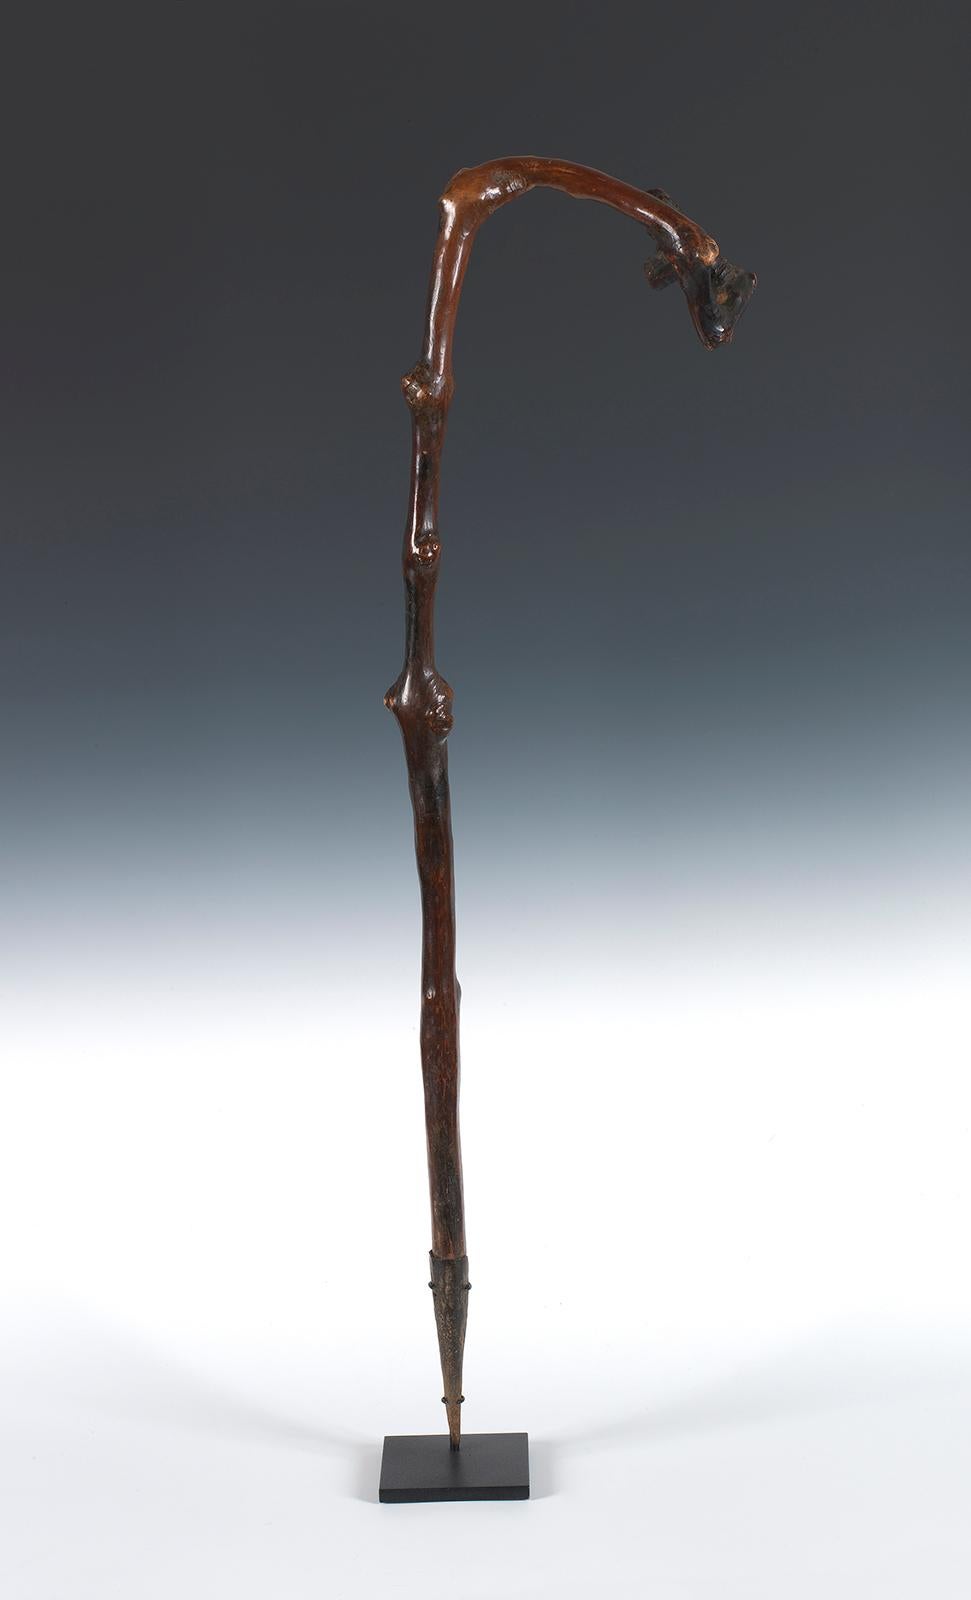 Bâton de marche ou de cérémonie
Le peuple bamiléké
Cameroun
20ème siècle
Bois, embout en métal moulé à la main
Mesures : 33 1/2